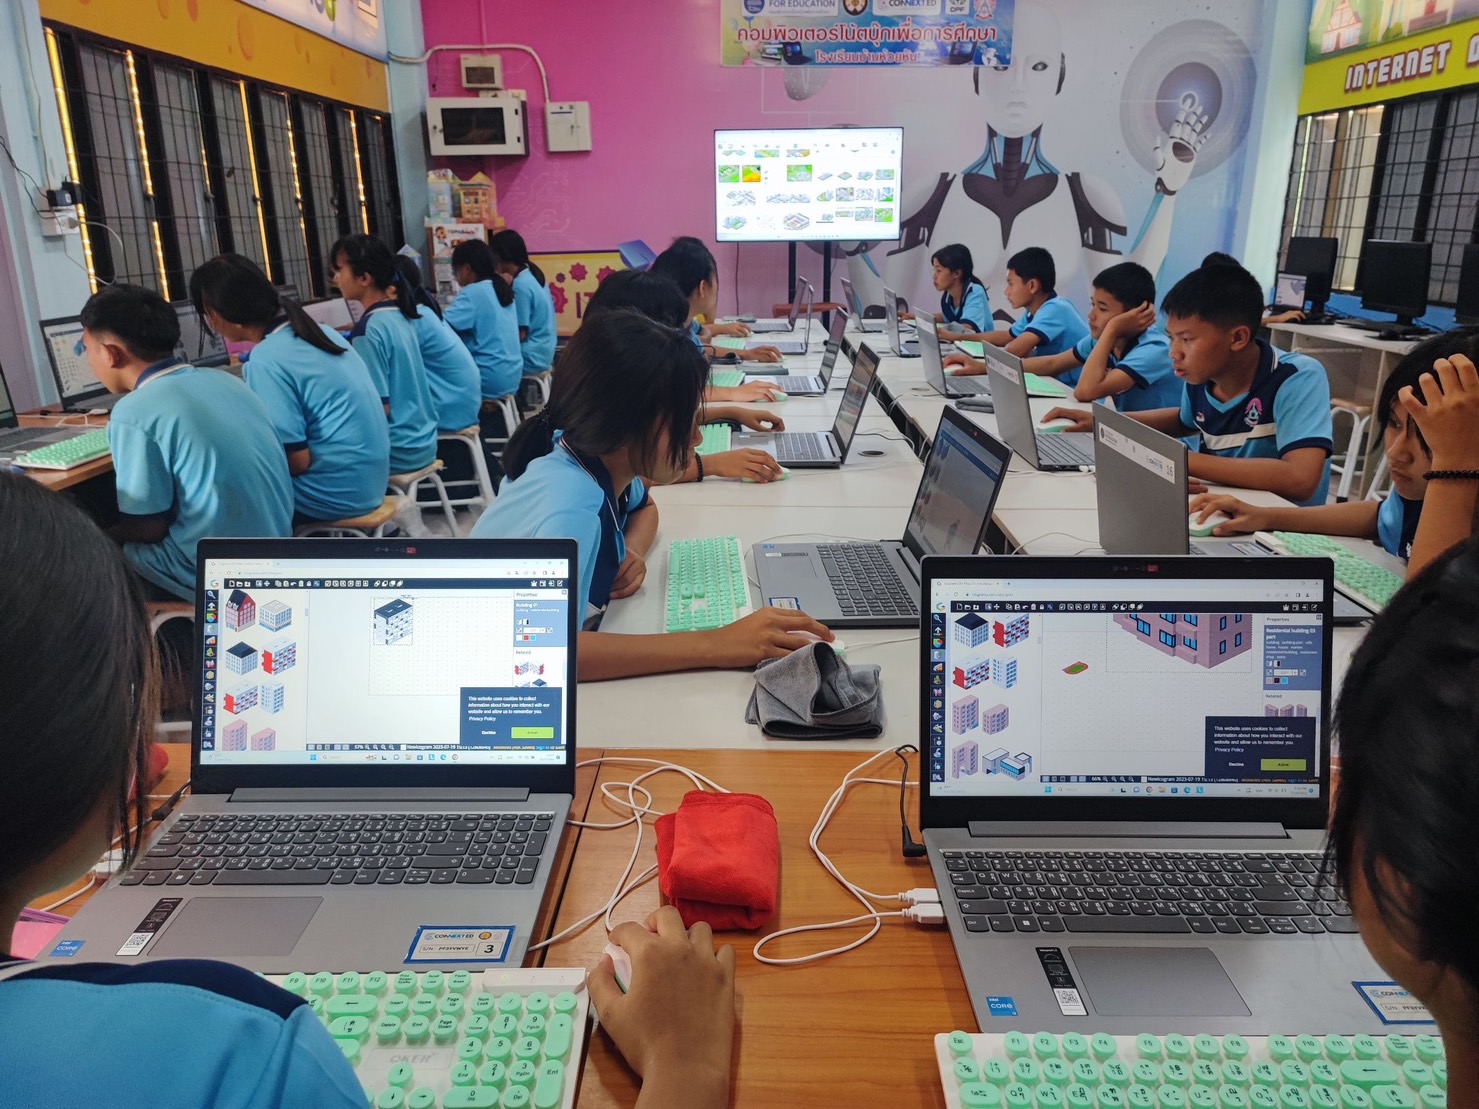 ซีพีเอฟ  ส่งเสริมศักยภาพเด็กไทยเข้าถึงการศึกษา  ร่วมขับเคลื่อน"คอนเน็กซ์ อีดี"  